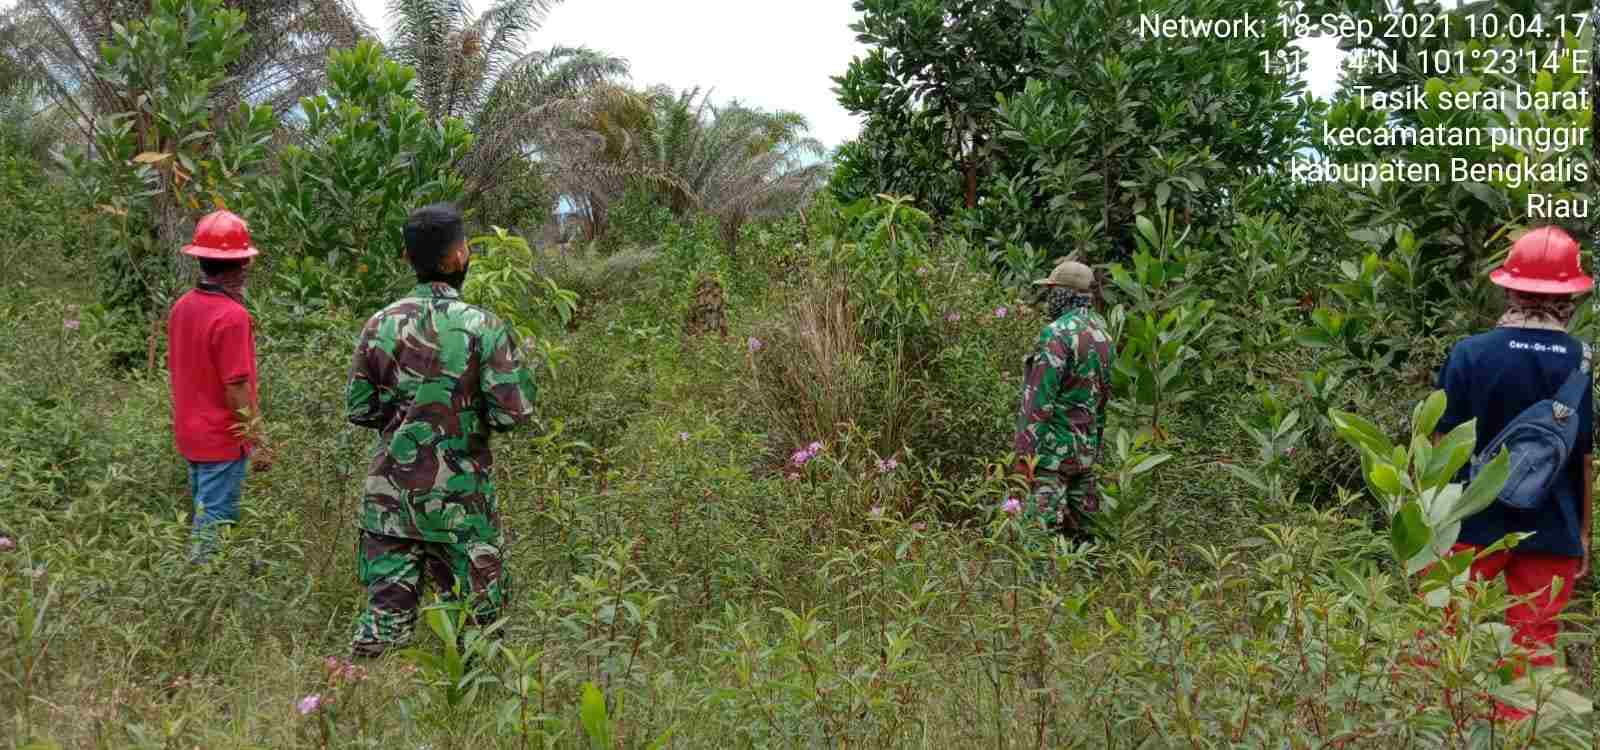 Desa Tasik Serai Menjadi Target Patroli Hotspot Oleh Serda Setiawan dan Serda M. Fikri